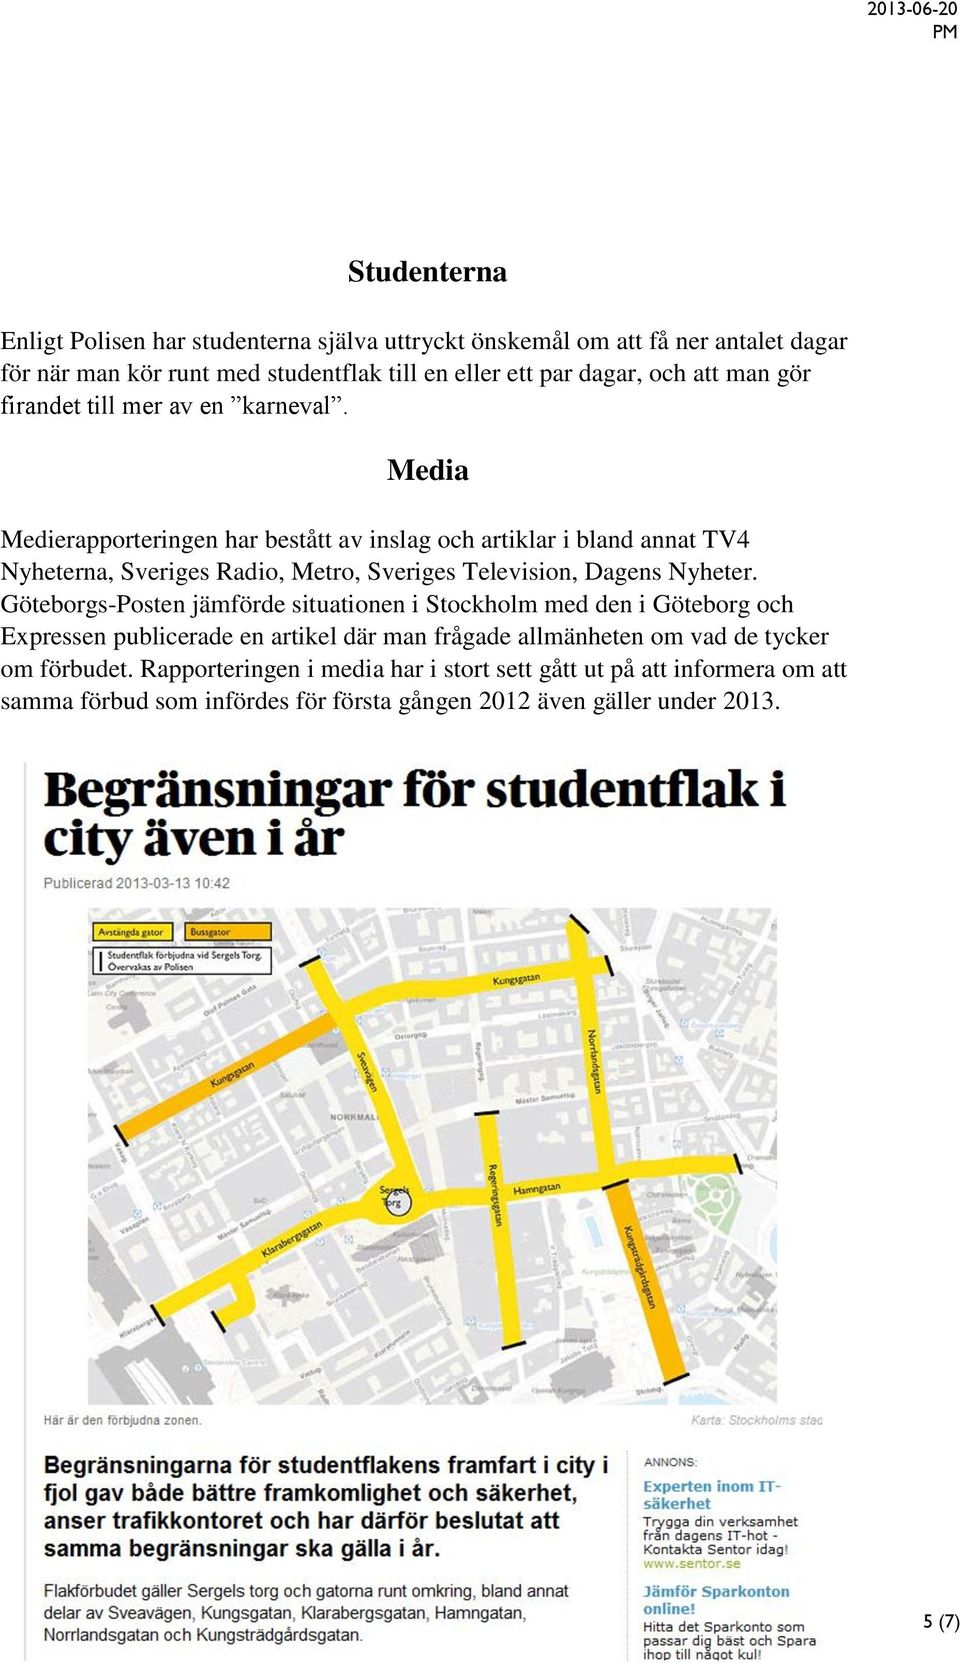 Media Medierapporteringen har bestått av inslag och artiklar i bland annat TV4 Nyheterna, Sveriges Radio, Metro, Sveriges Television, Dagens Nyheter.